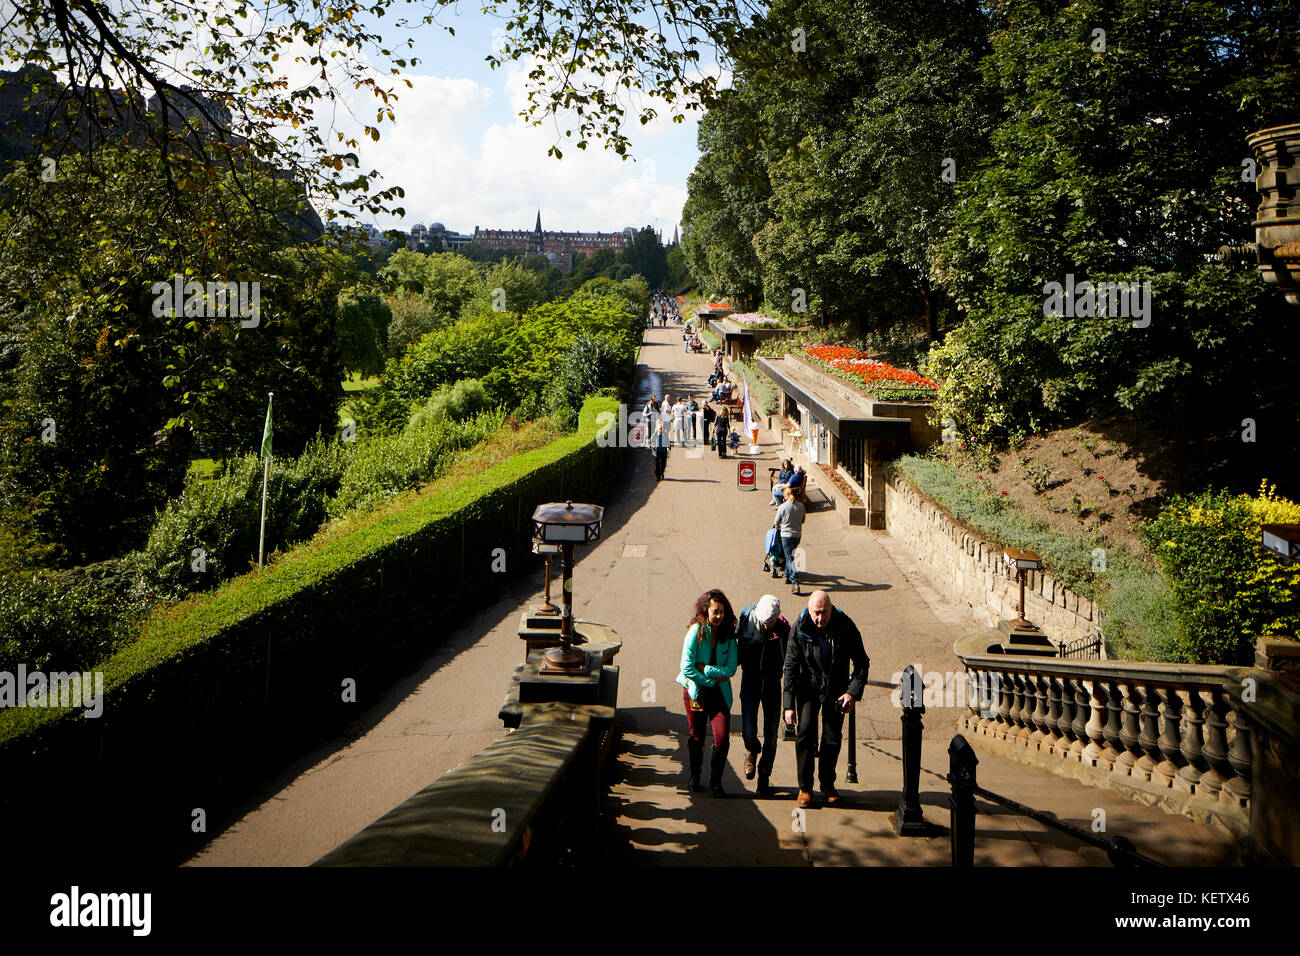 Edimbourg, Ecosse, Princess Street Gardens sur une journée ensoleillée Banque D'Images